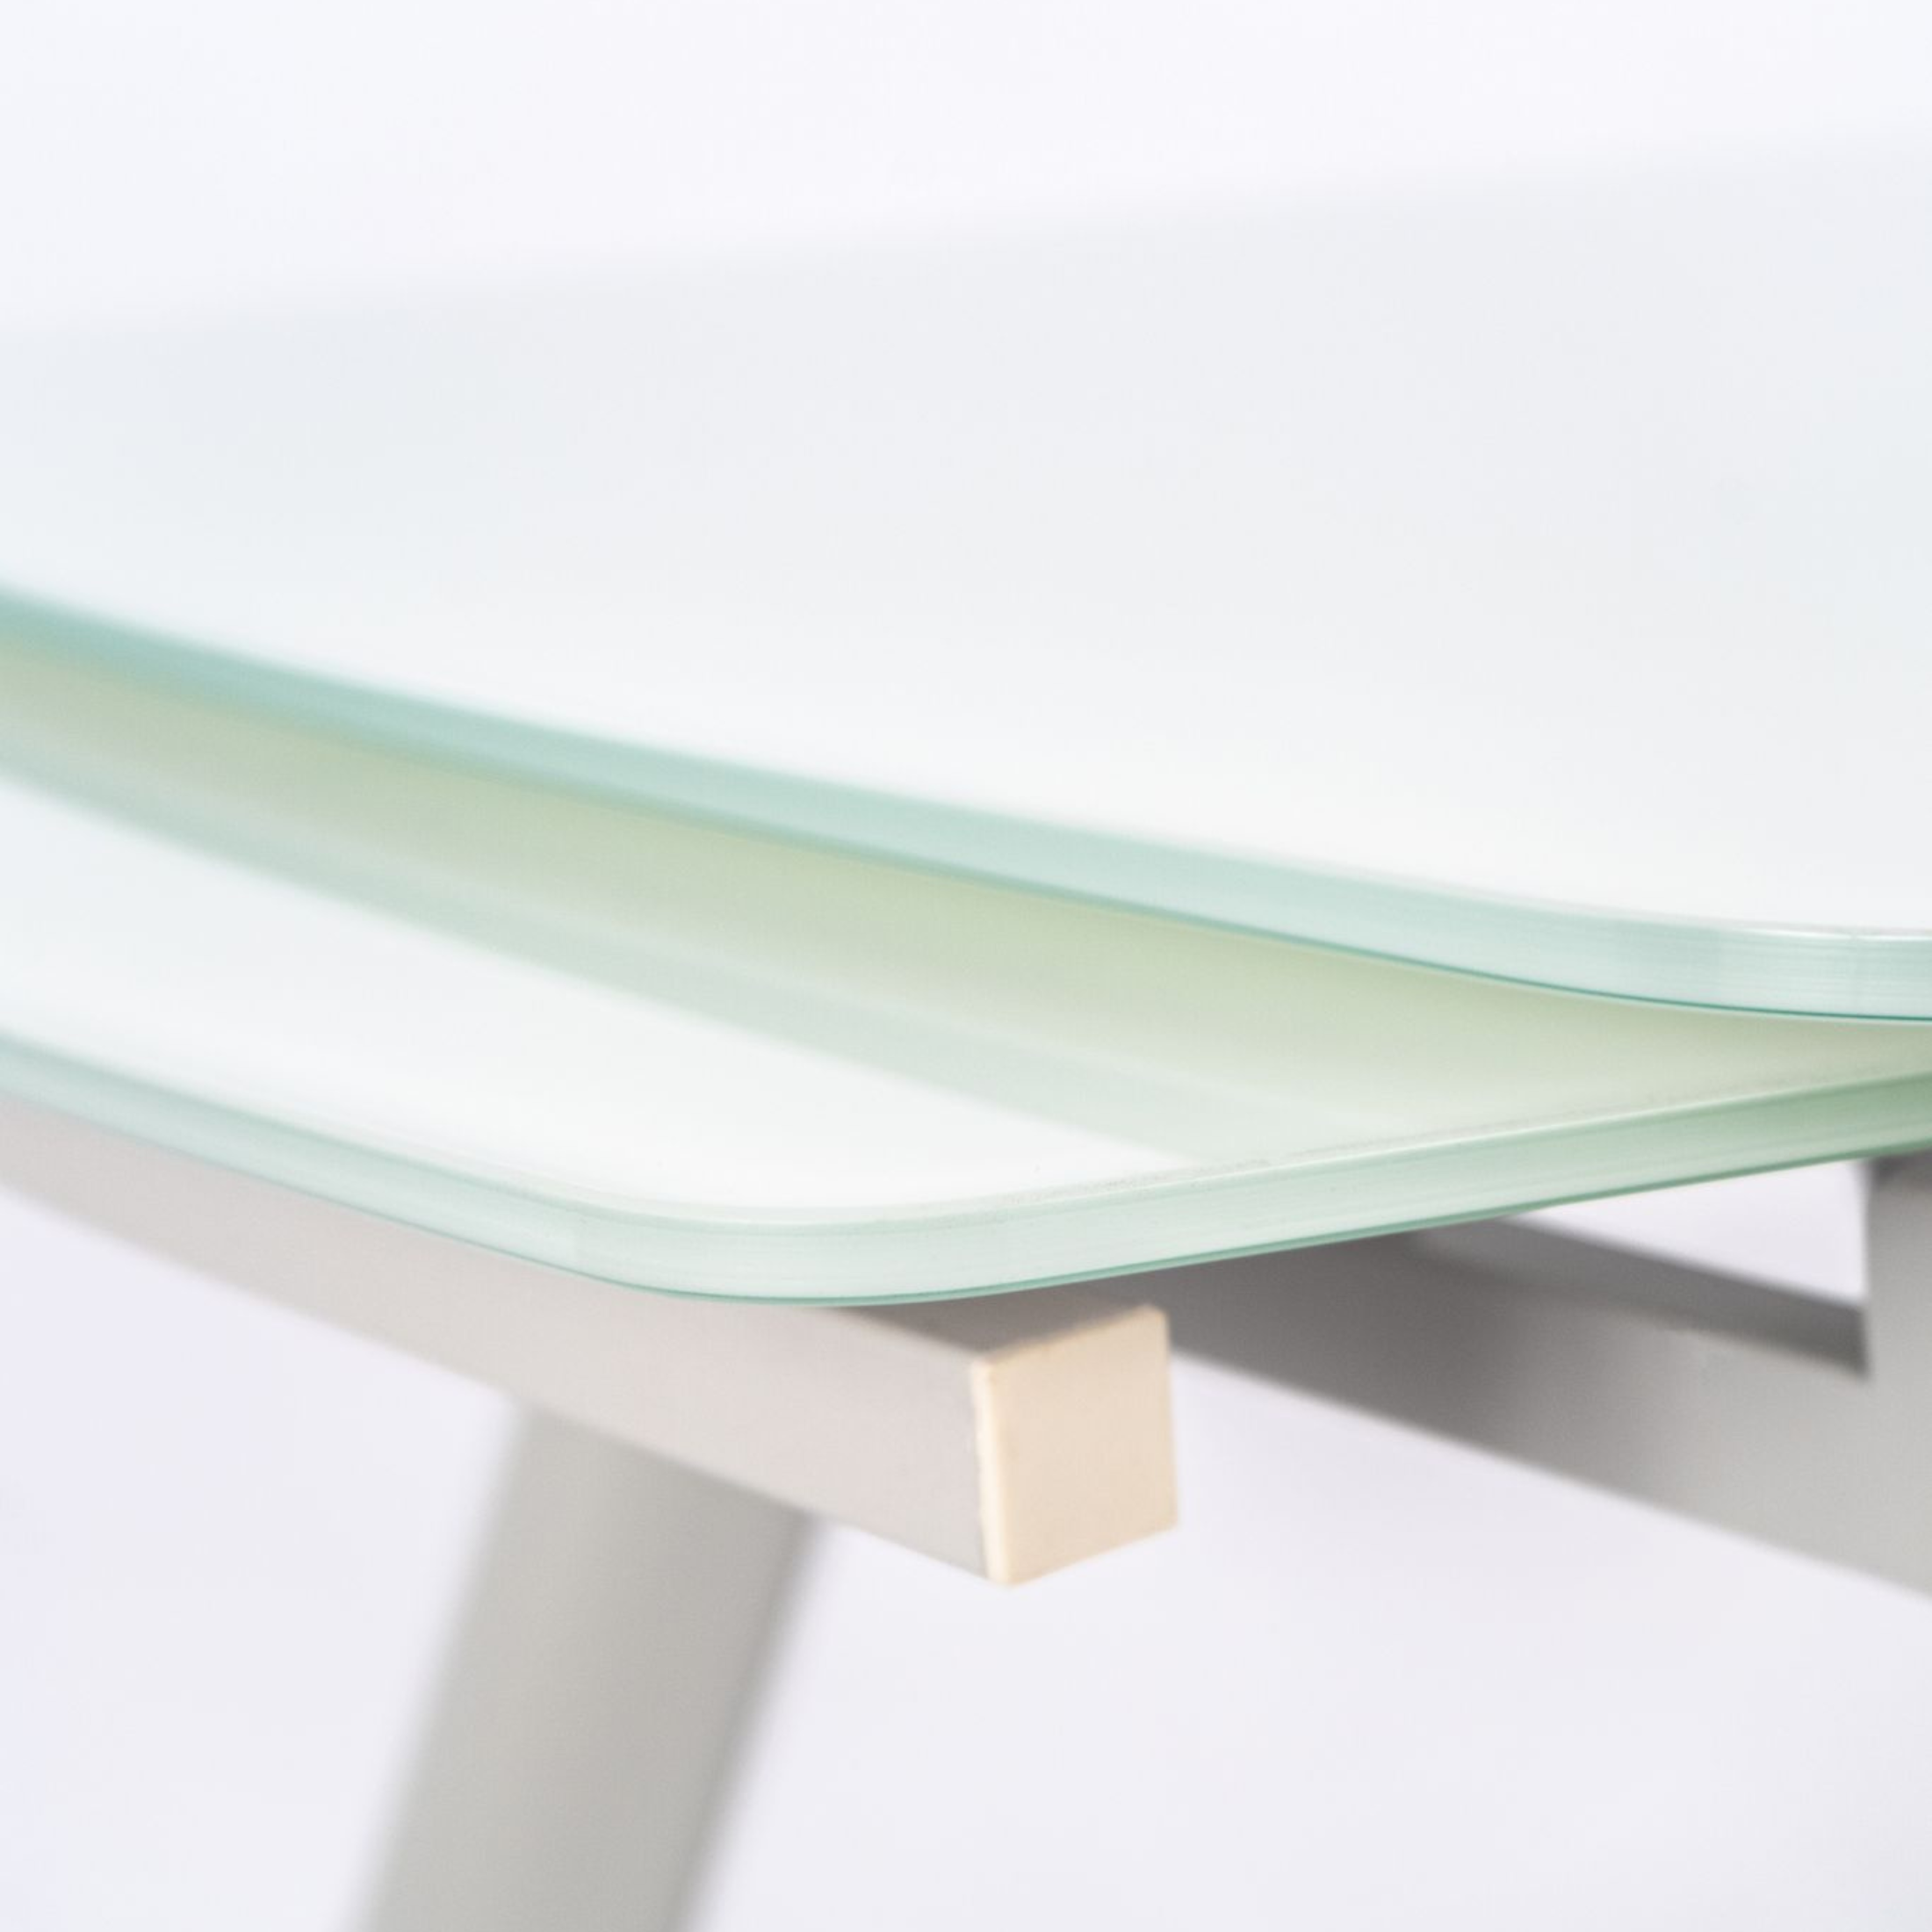 Table extensible en verre trempé extra Blanc "Phil" avec pieds en métal gris clair 140/210x90 h76 cm